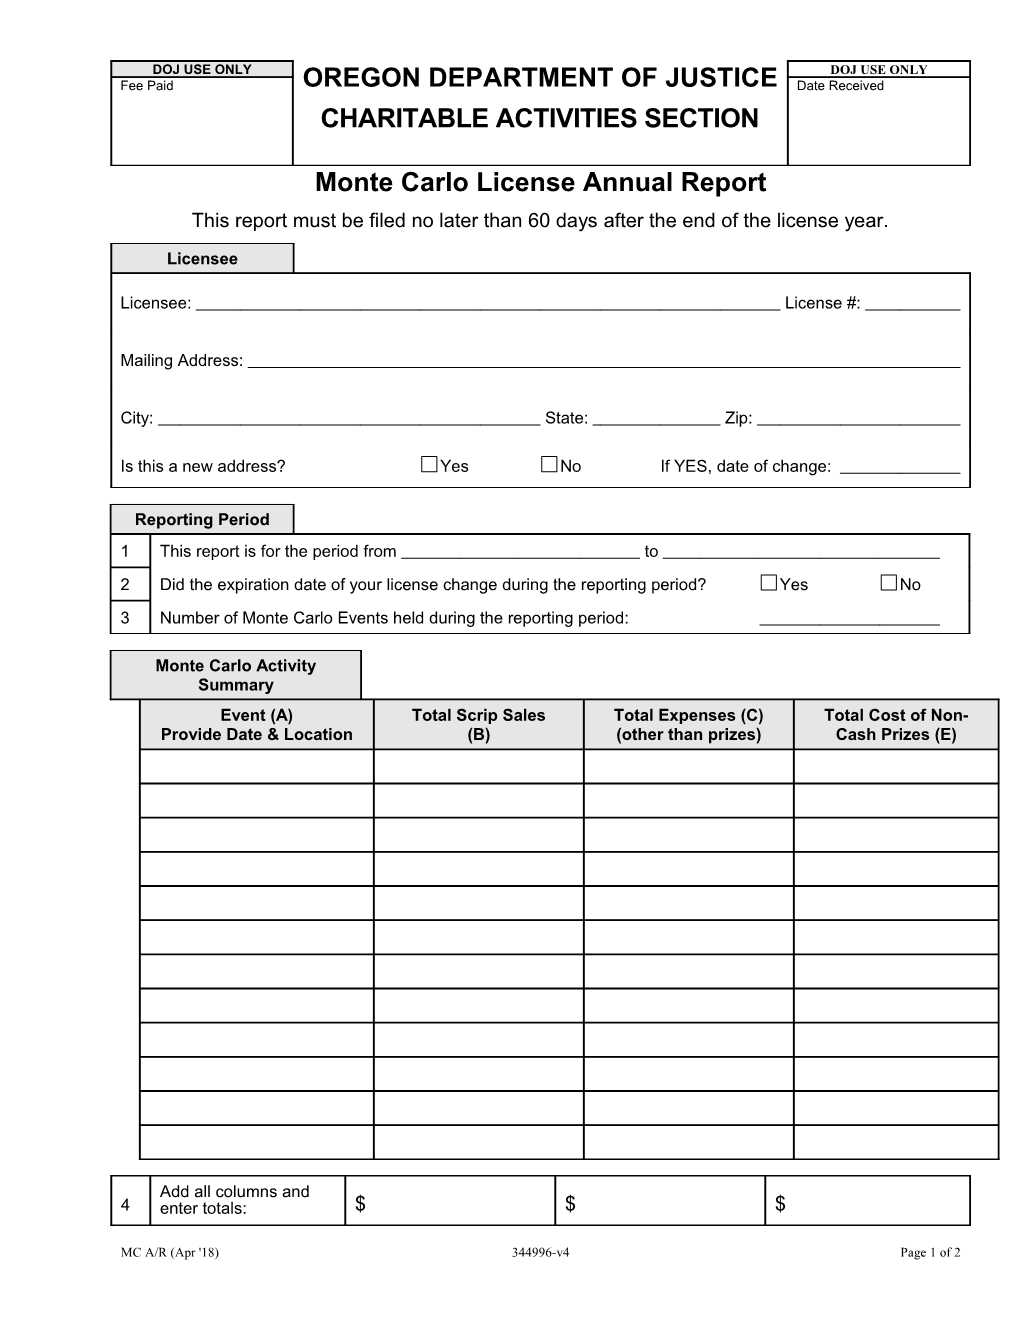 Monte Carlo License Annual Report